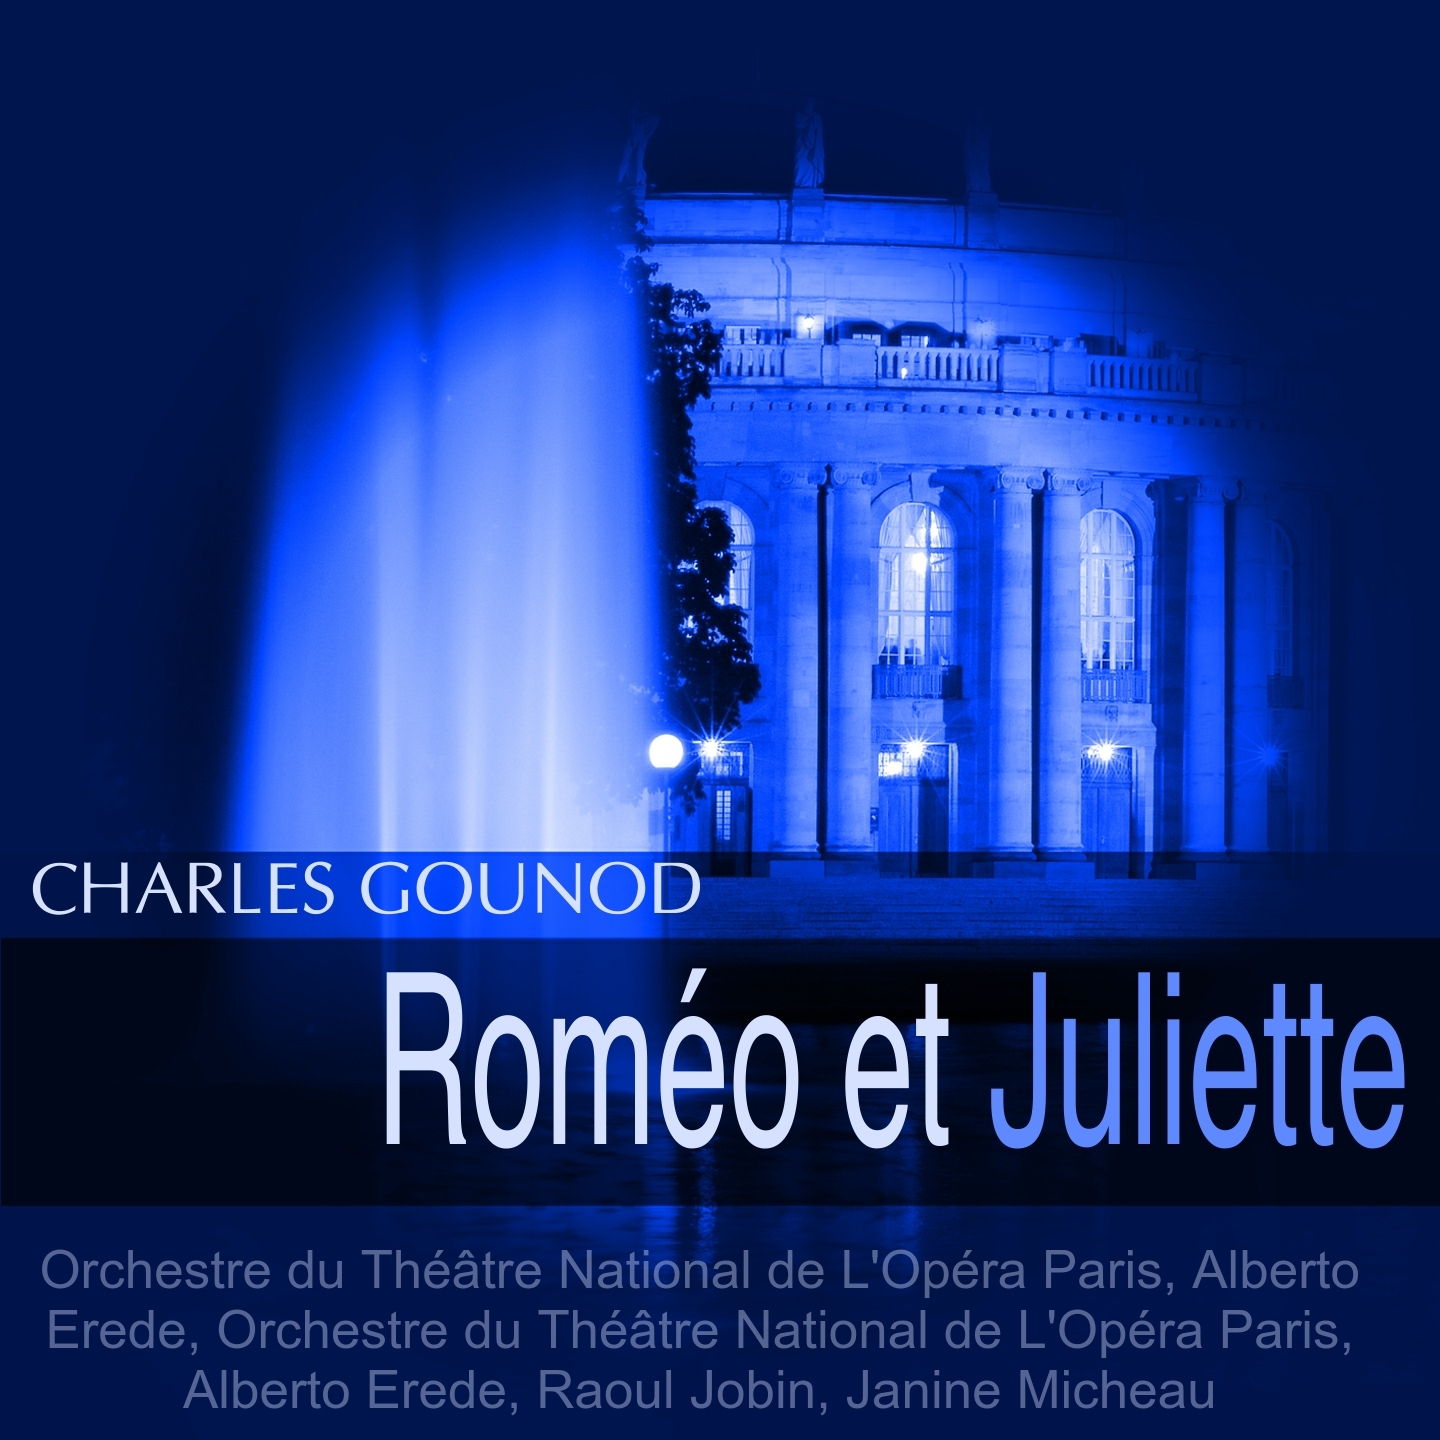 Rome o et Juliette, Act III: " jour de deuil!  jour de larmes!" Ensemble